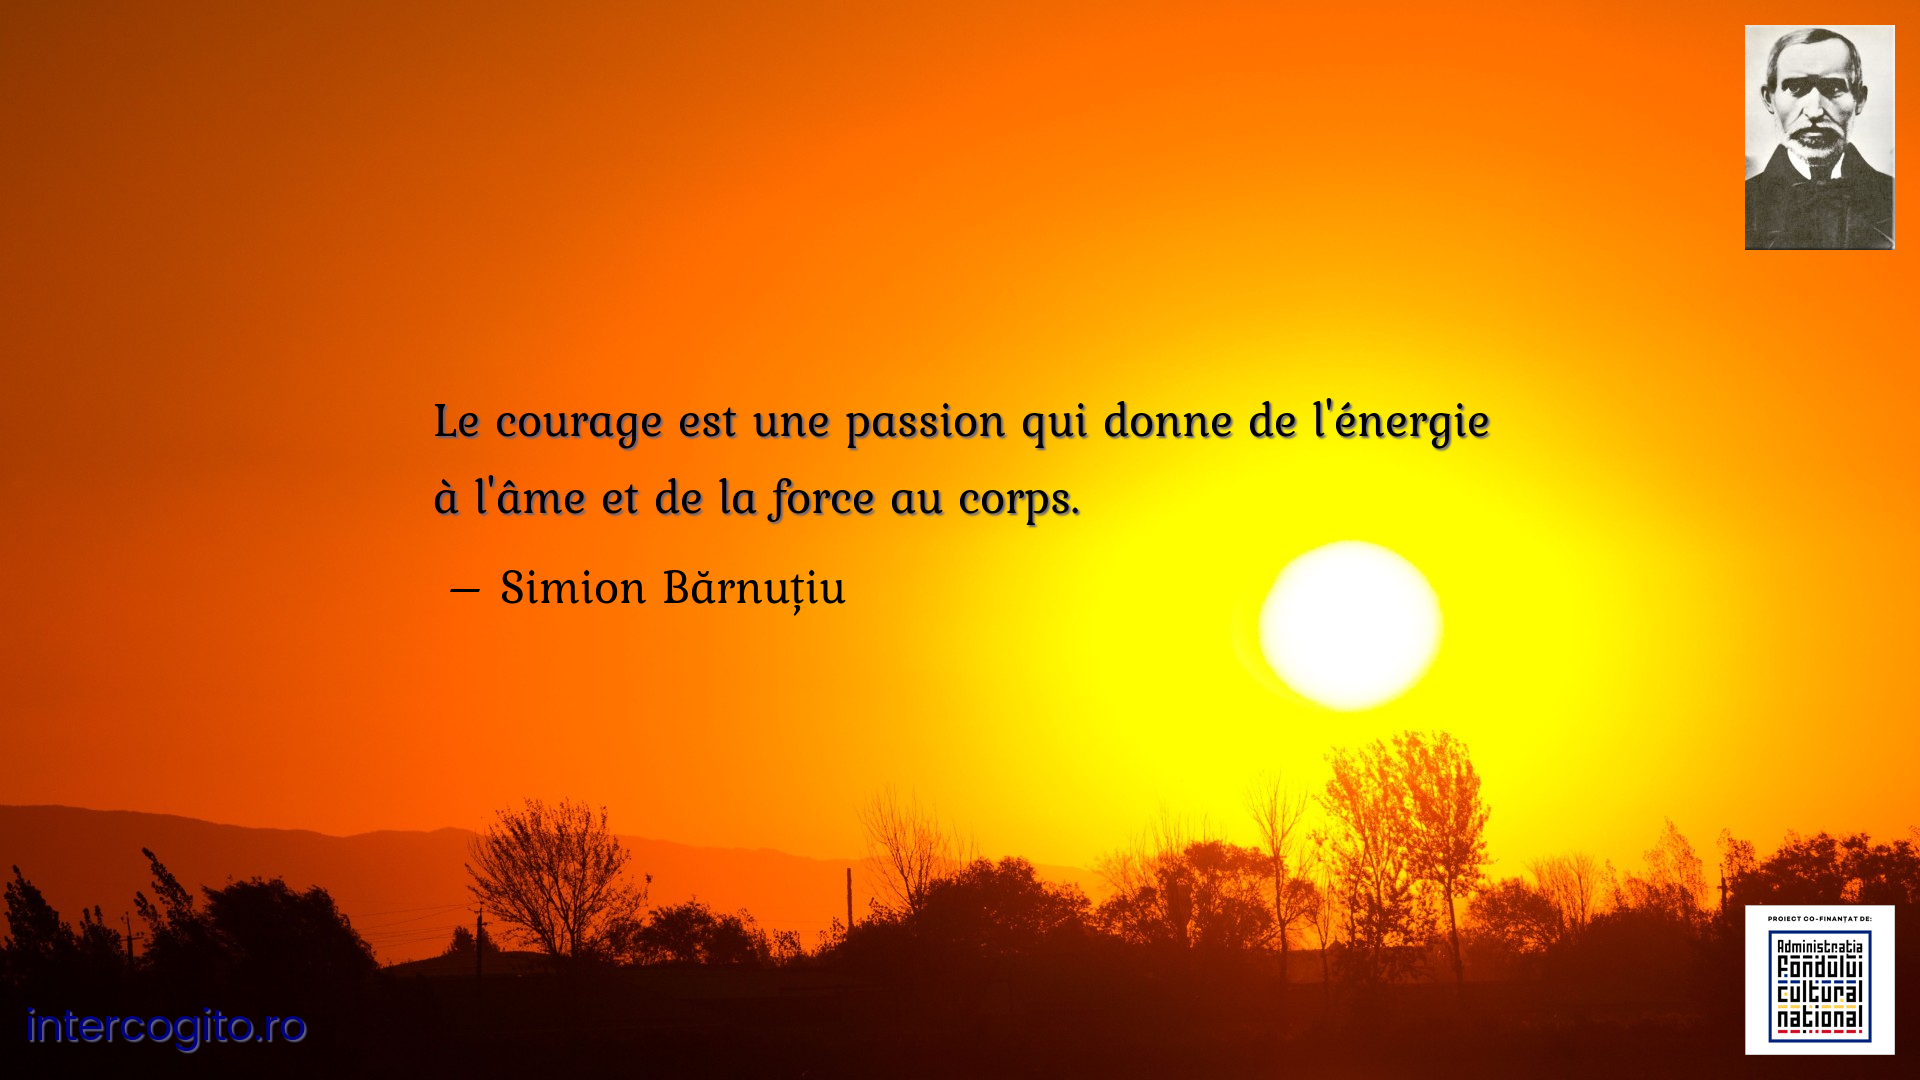 Le courage est une passion qui donne de l'énergie à l'âme et de la force au corps.